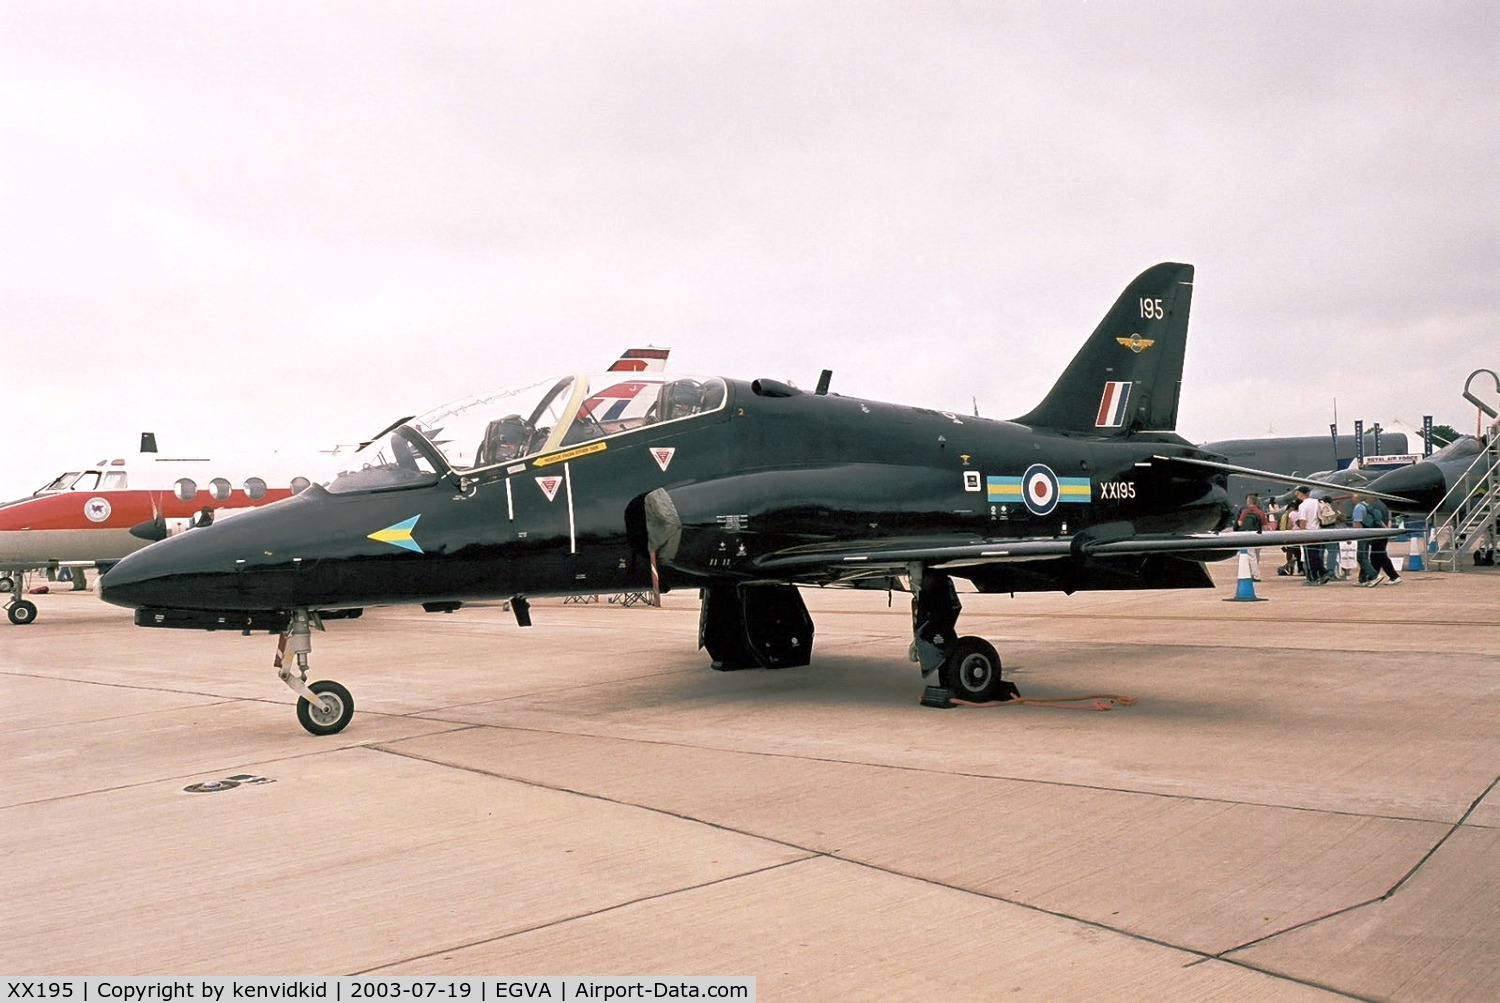 XX195, 1978 Hawker Siddeley Hawk T.1 C/N 042/312042, Royal Air Force at RIAT.